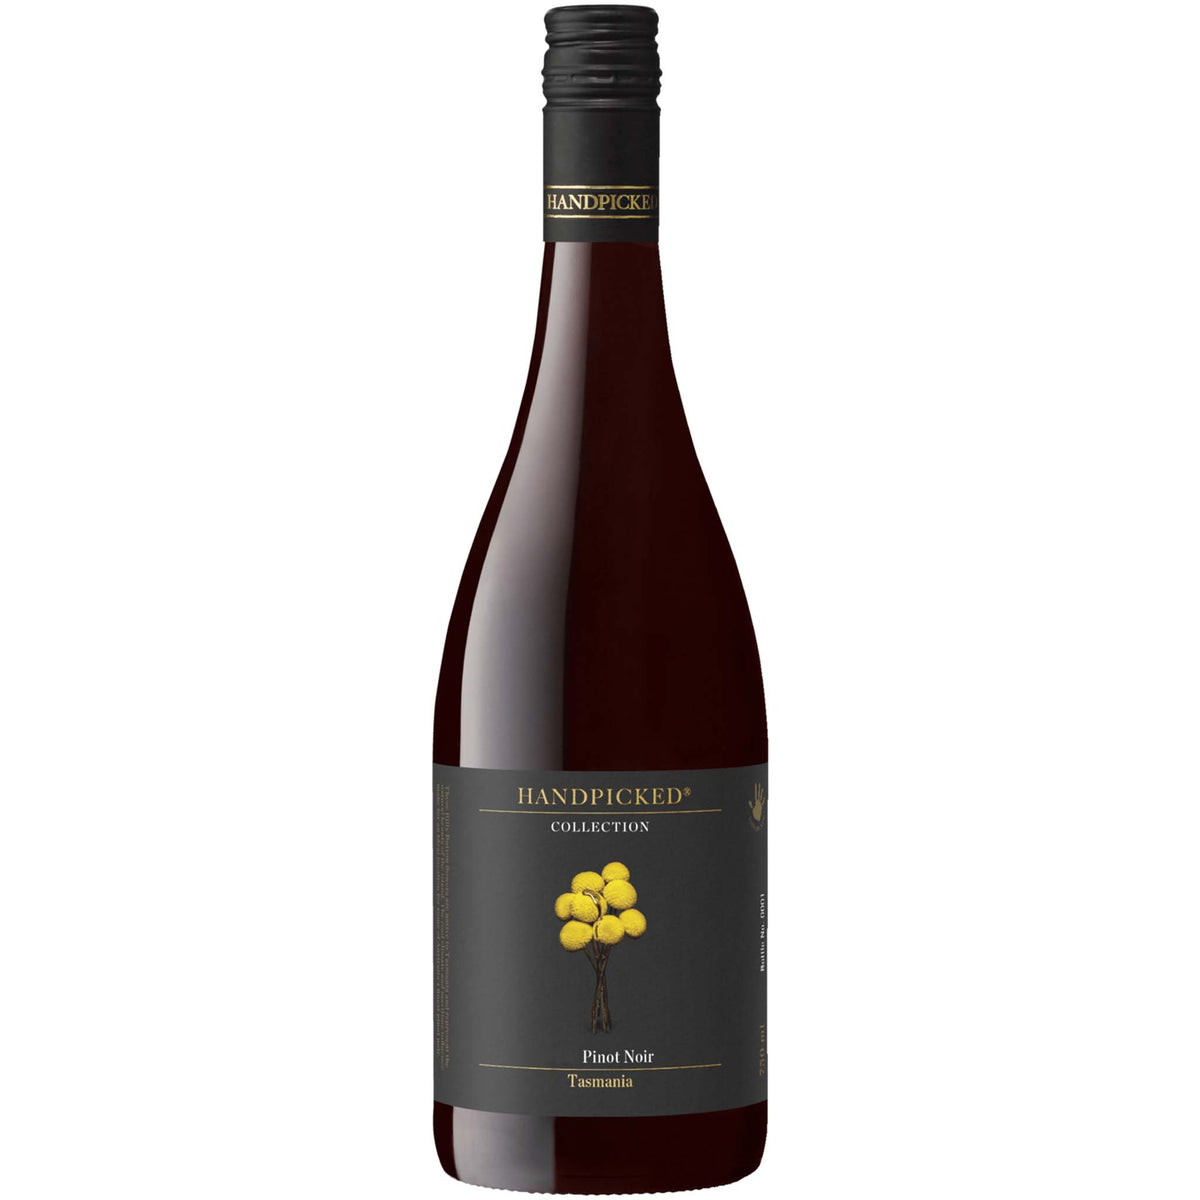 Handpicked Collection Tasmanian Pinot Noir 2019